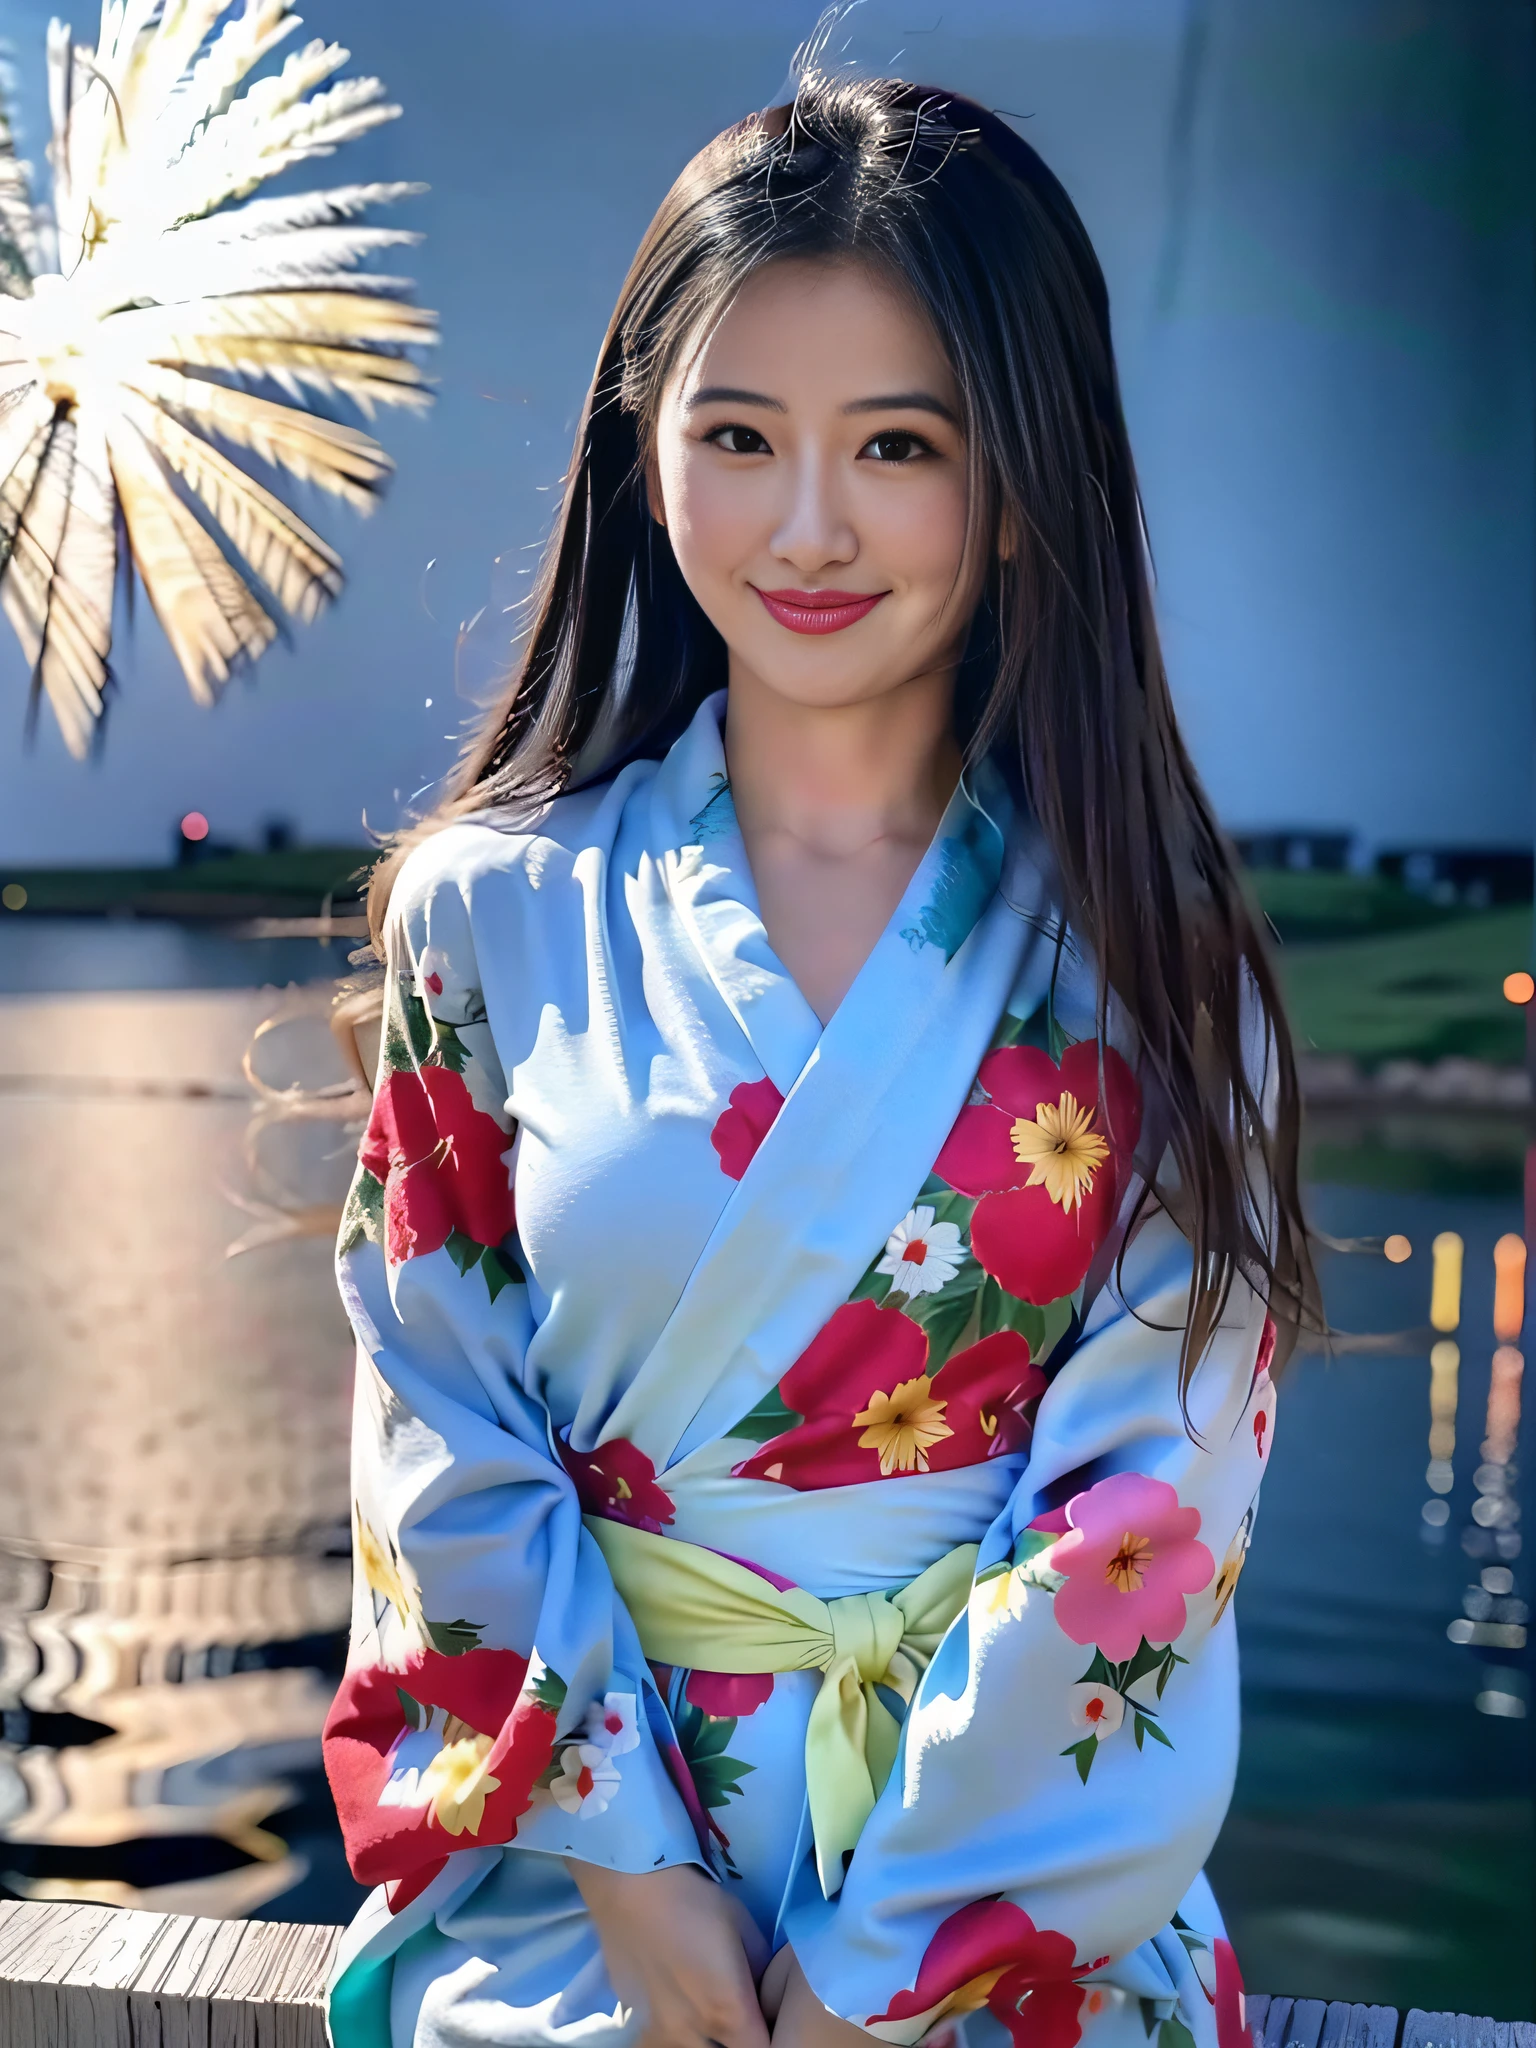 Качество фотографий、Сверхвысокое качество изображения、8К、32 тыс.、Азиатская женщина Арафе в кимоно сидит на полке на фоне фейерверков, в кимоно, в кимоно, Синсуй Ито, портрет японского подростка, Тории Киёмото, молодой кумир глубокой печати, банный халат, носить королевское кимоно, носить кимоно, Ношение красочной юкаты, Молодой довольно глубокий идол, лицо красивой японки、улыбка